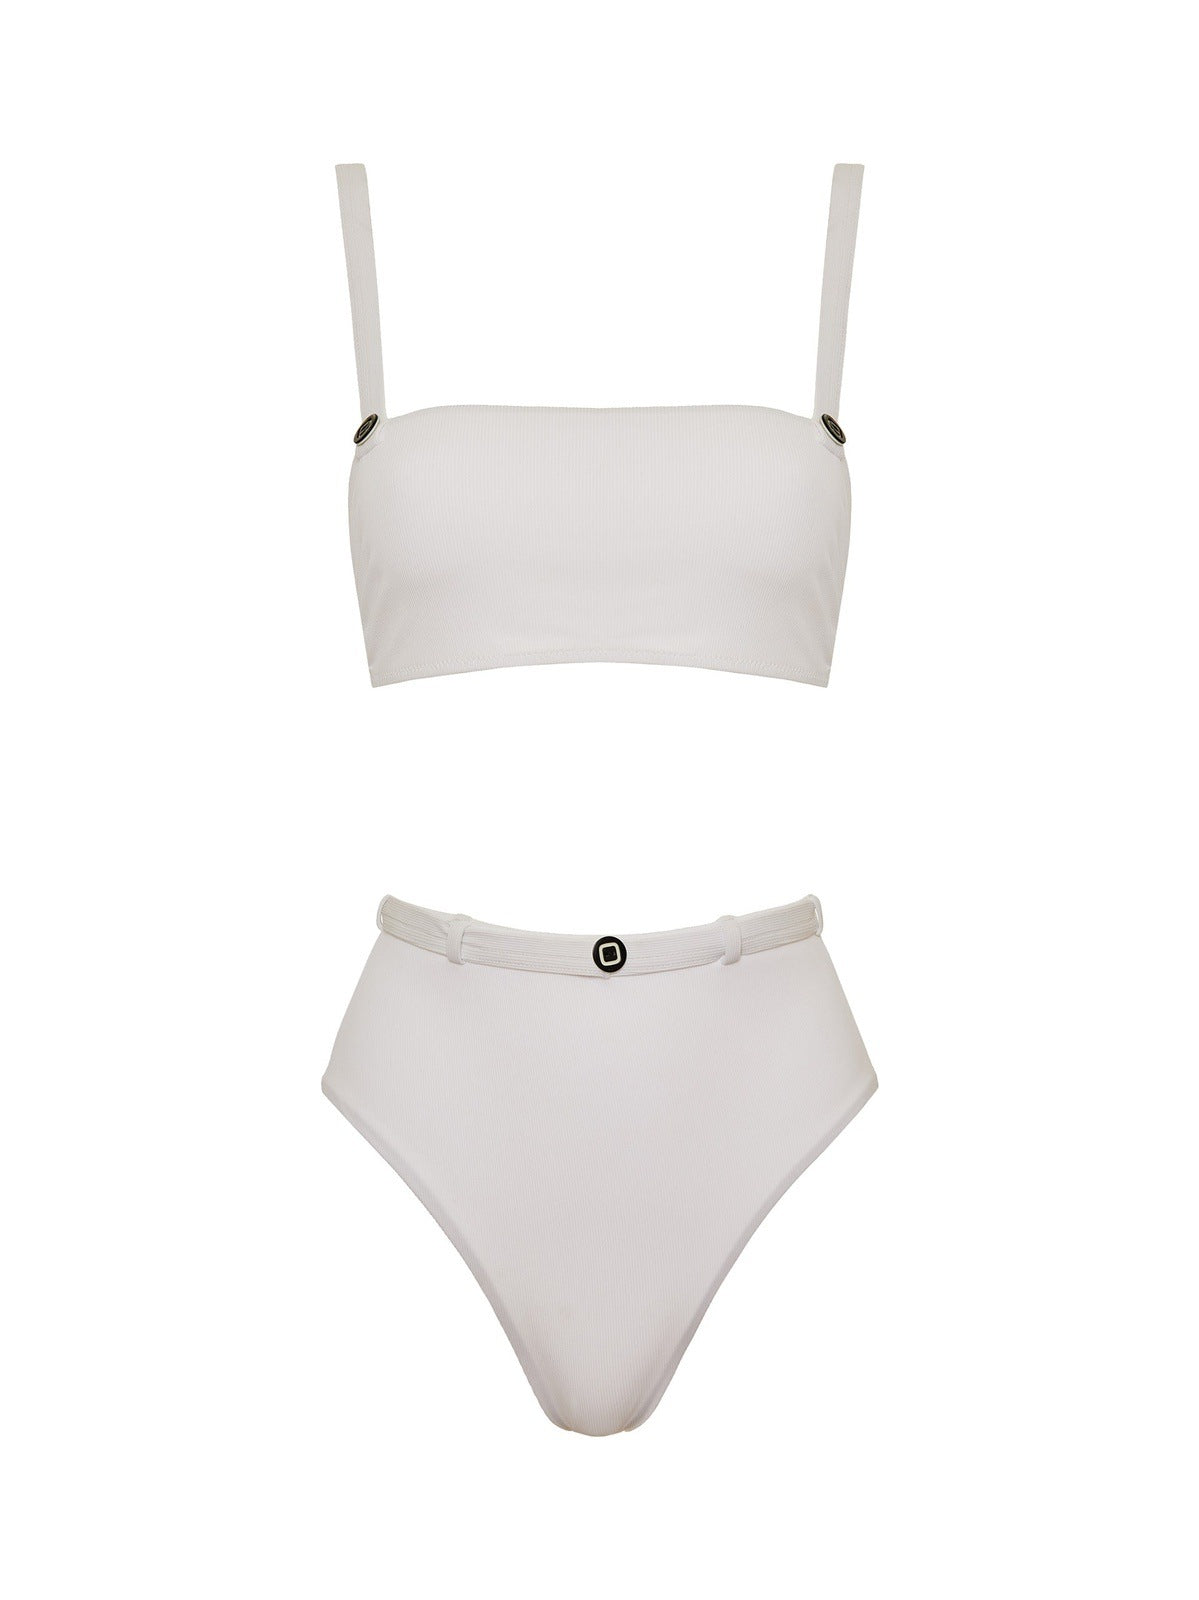 The Daria bikini in Bianco